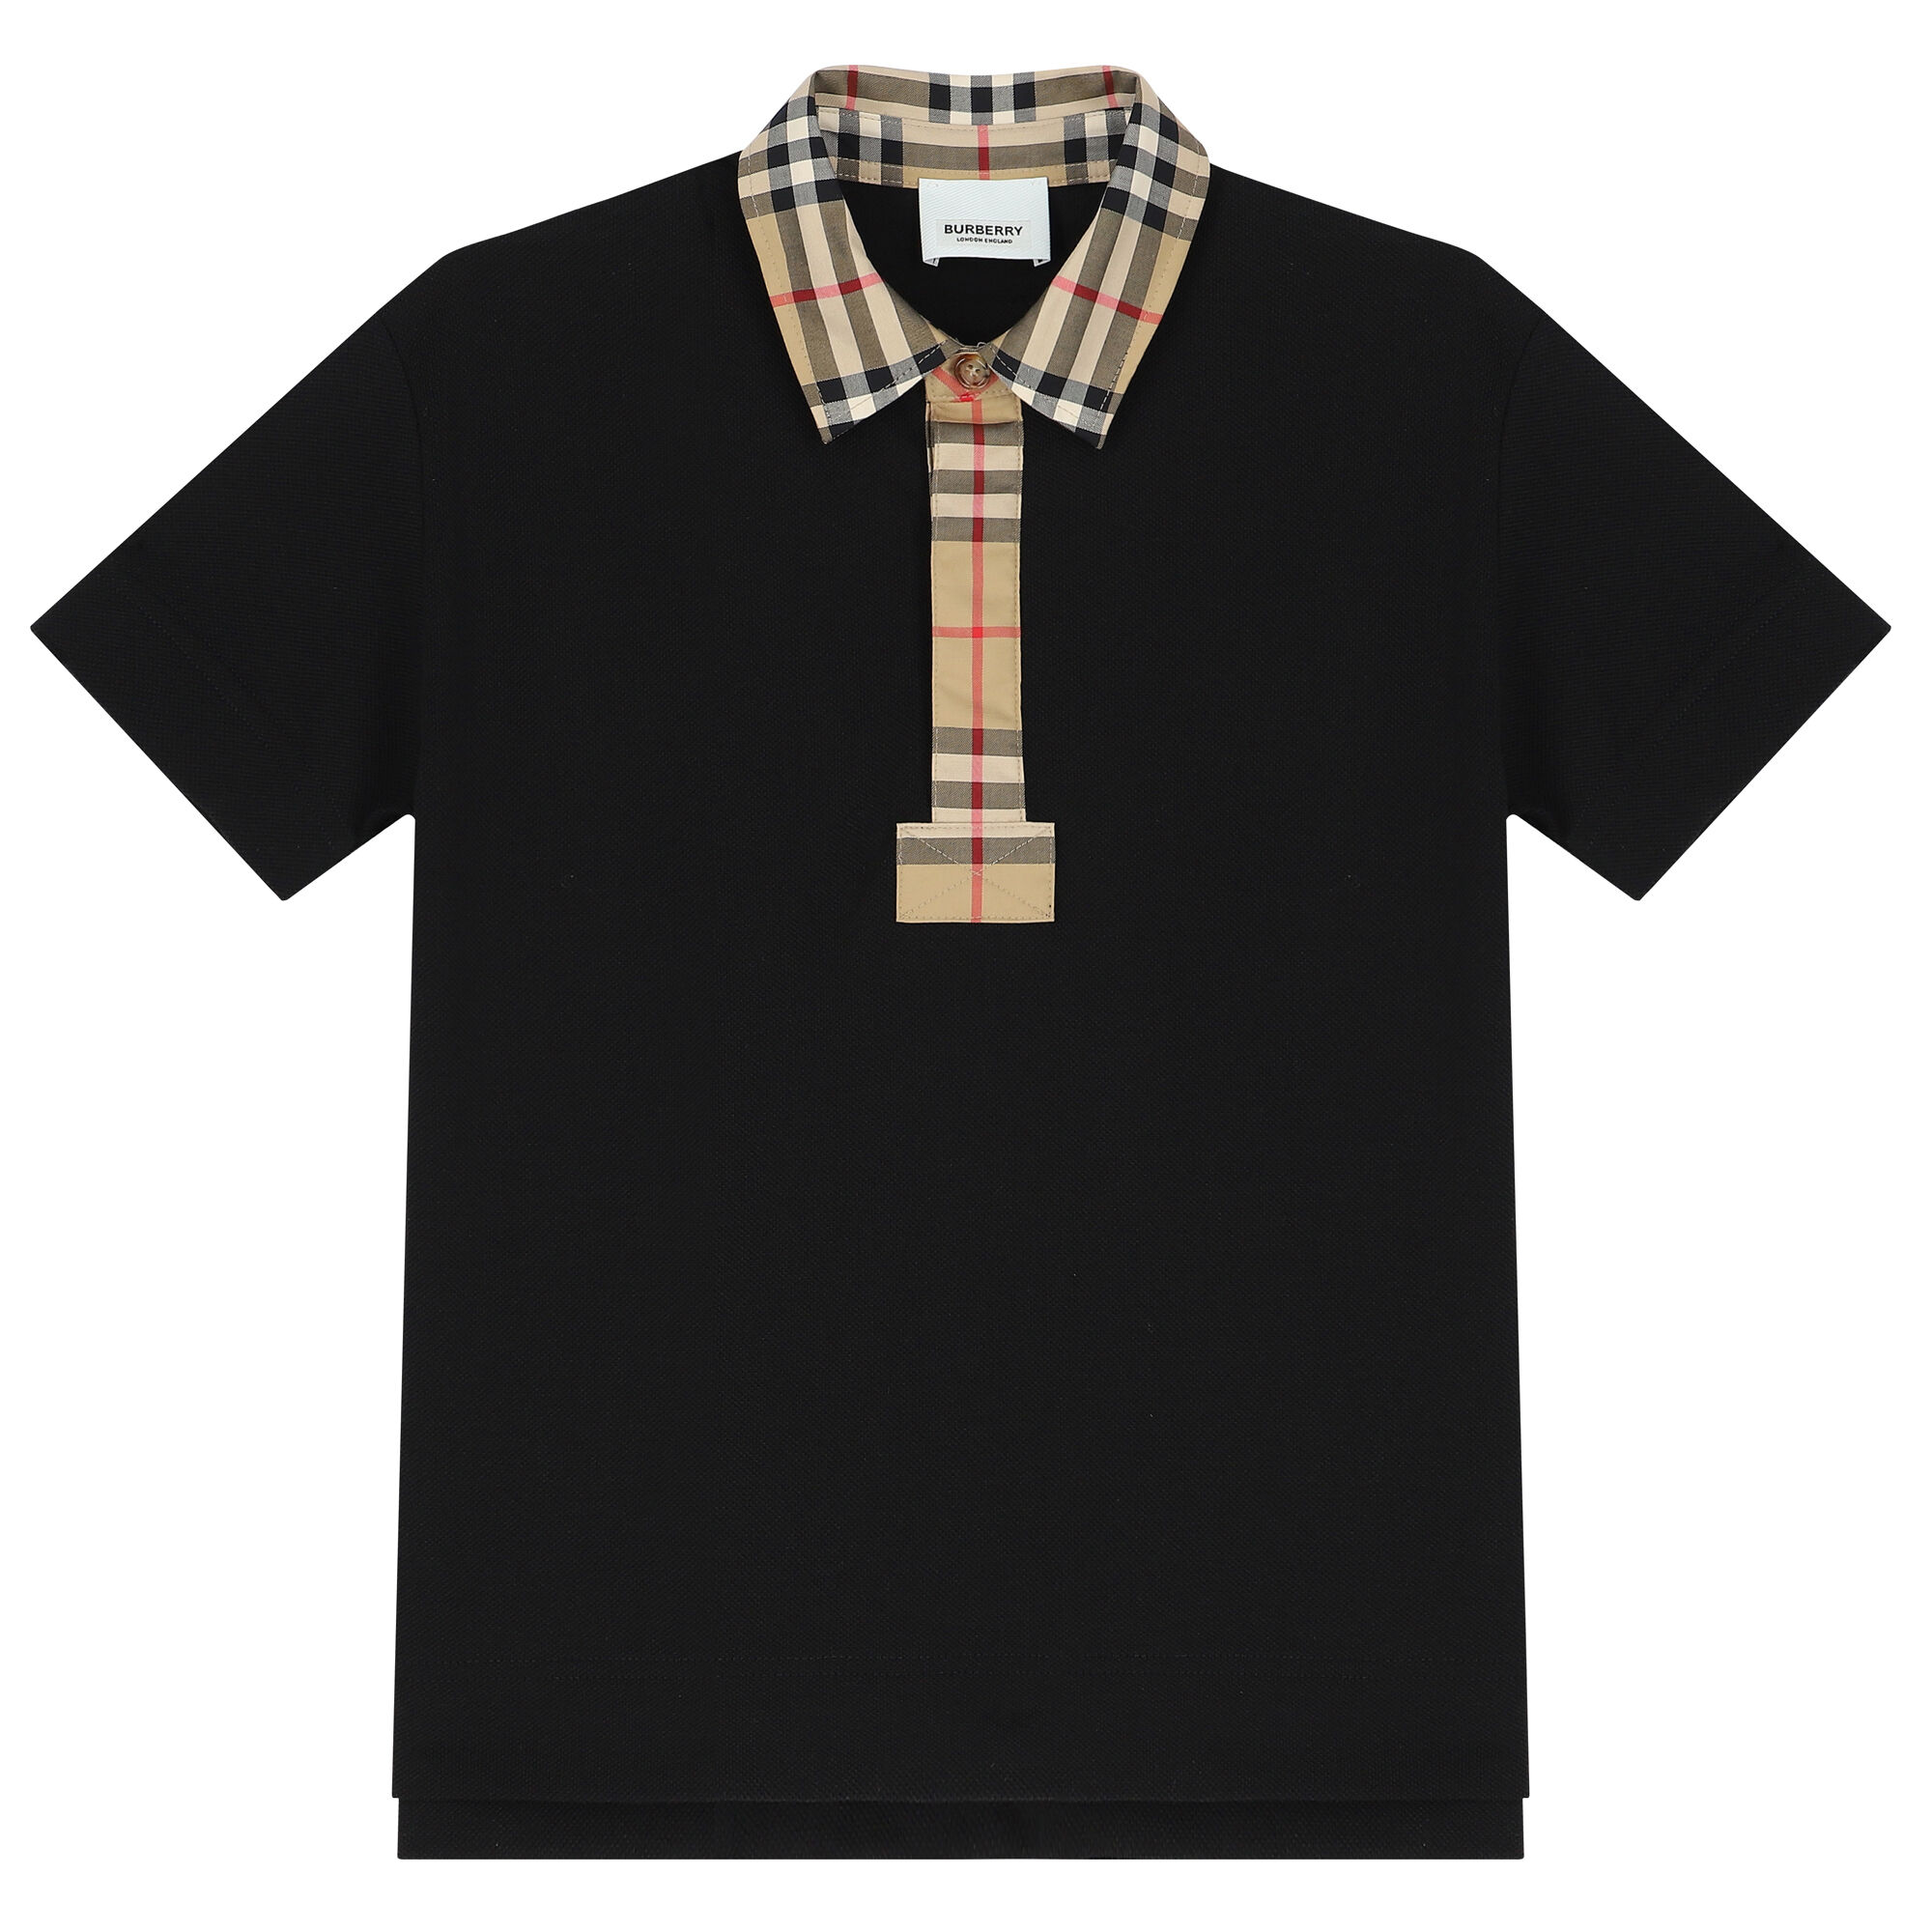 Burberry Boys Black Checkered Polo Shirt | Junior Couture USA